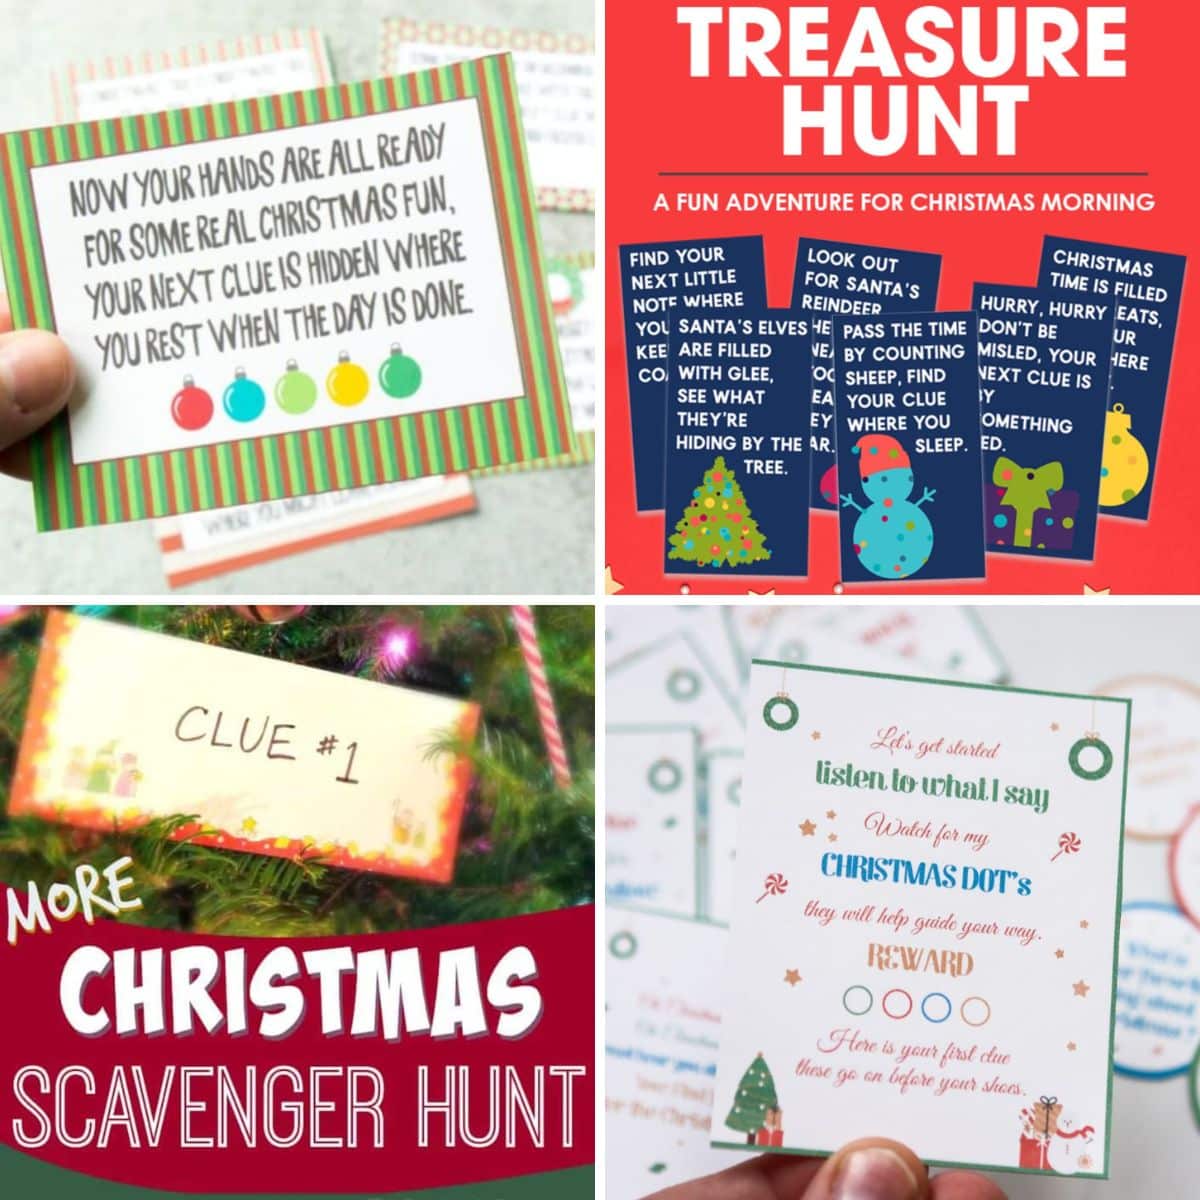 4 images of christmas scavenger hunt ides for kids.